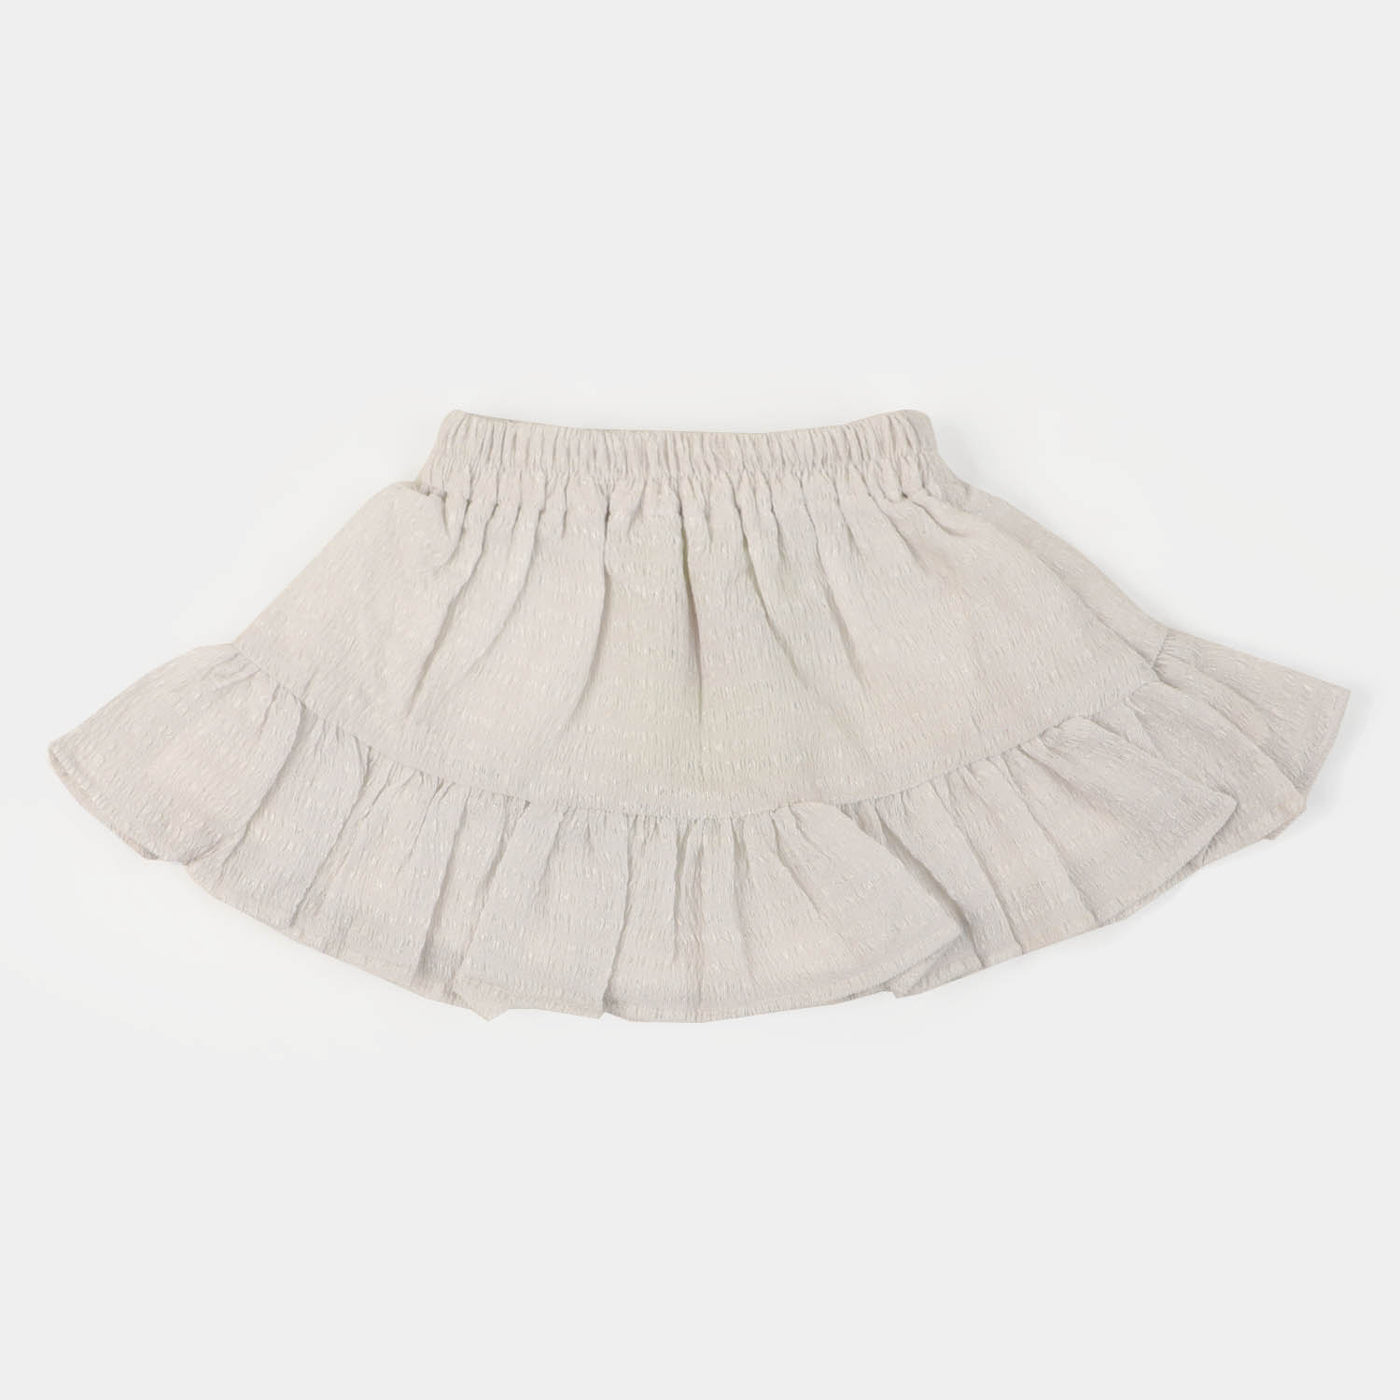 Infant Girls Printed Short Skirt Crushed - White